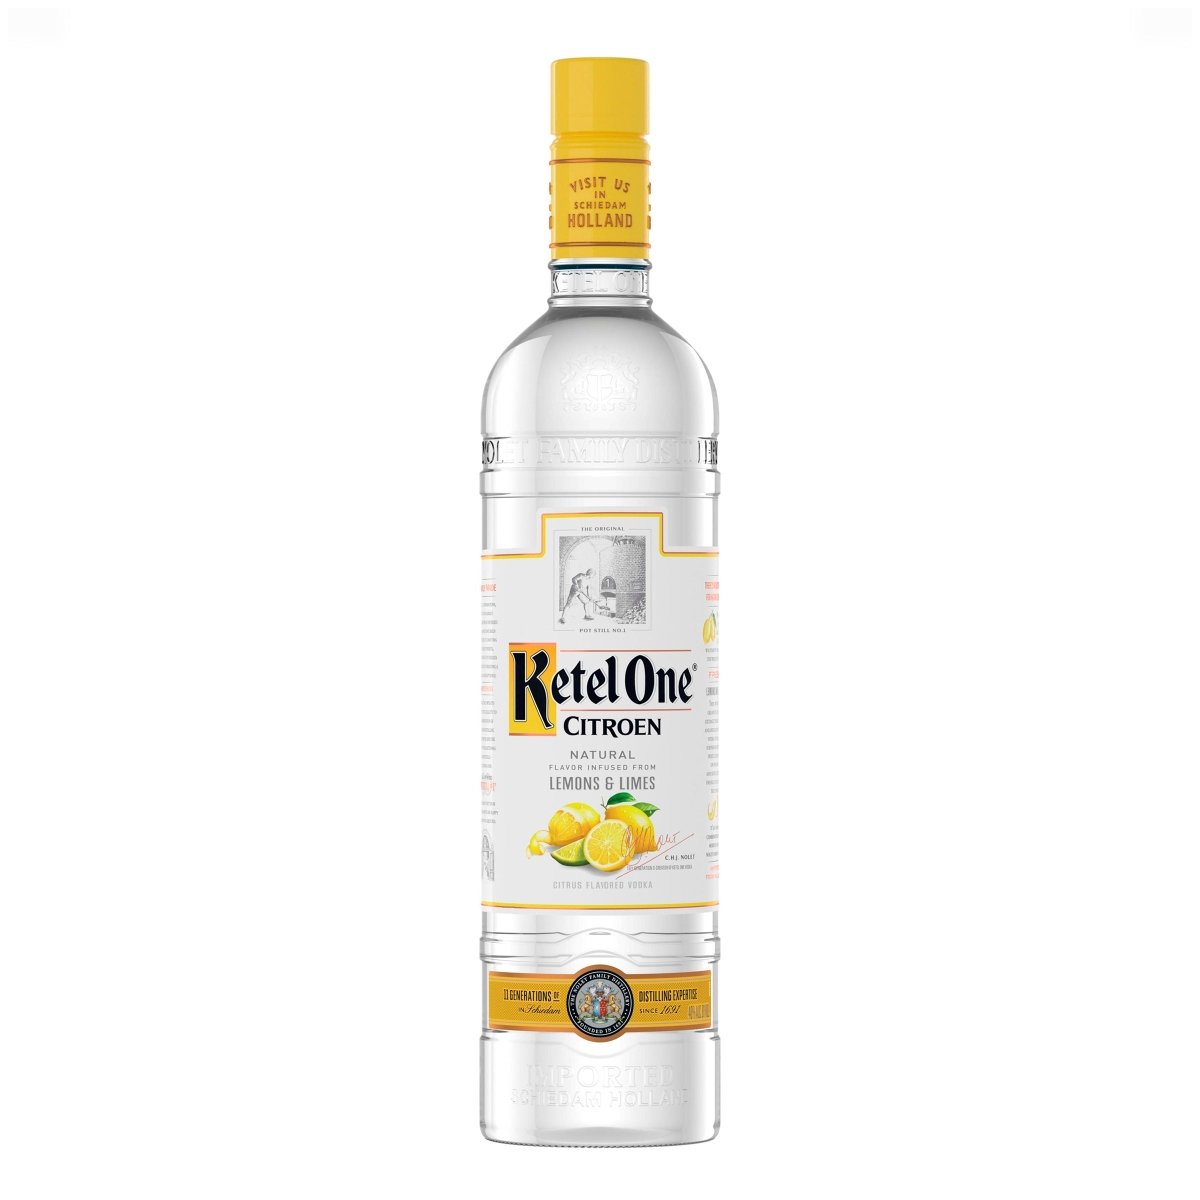 Ketel One - Lemon